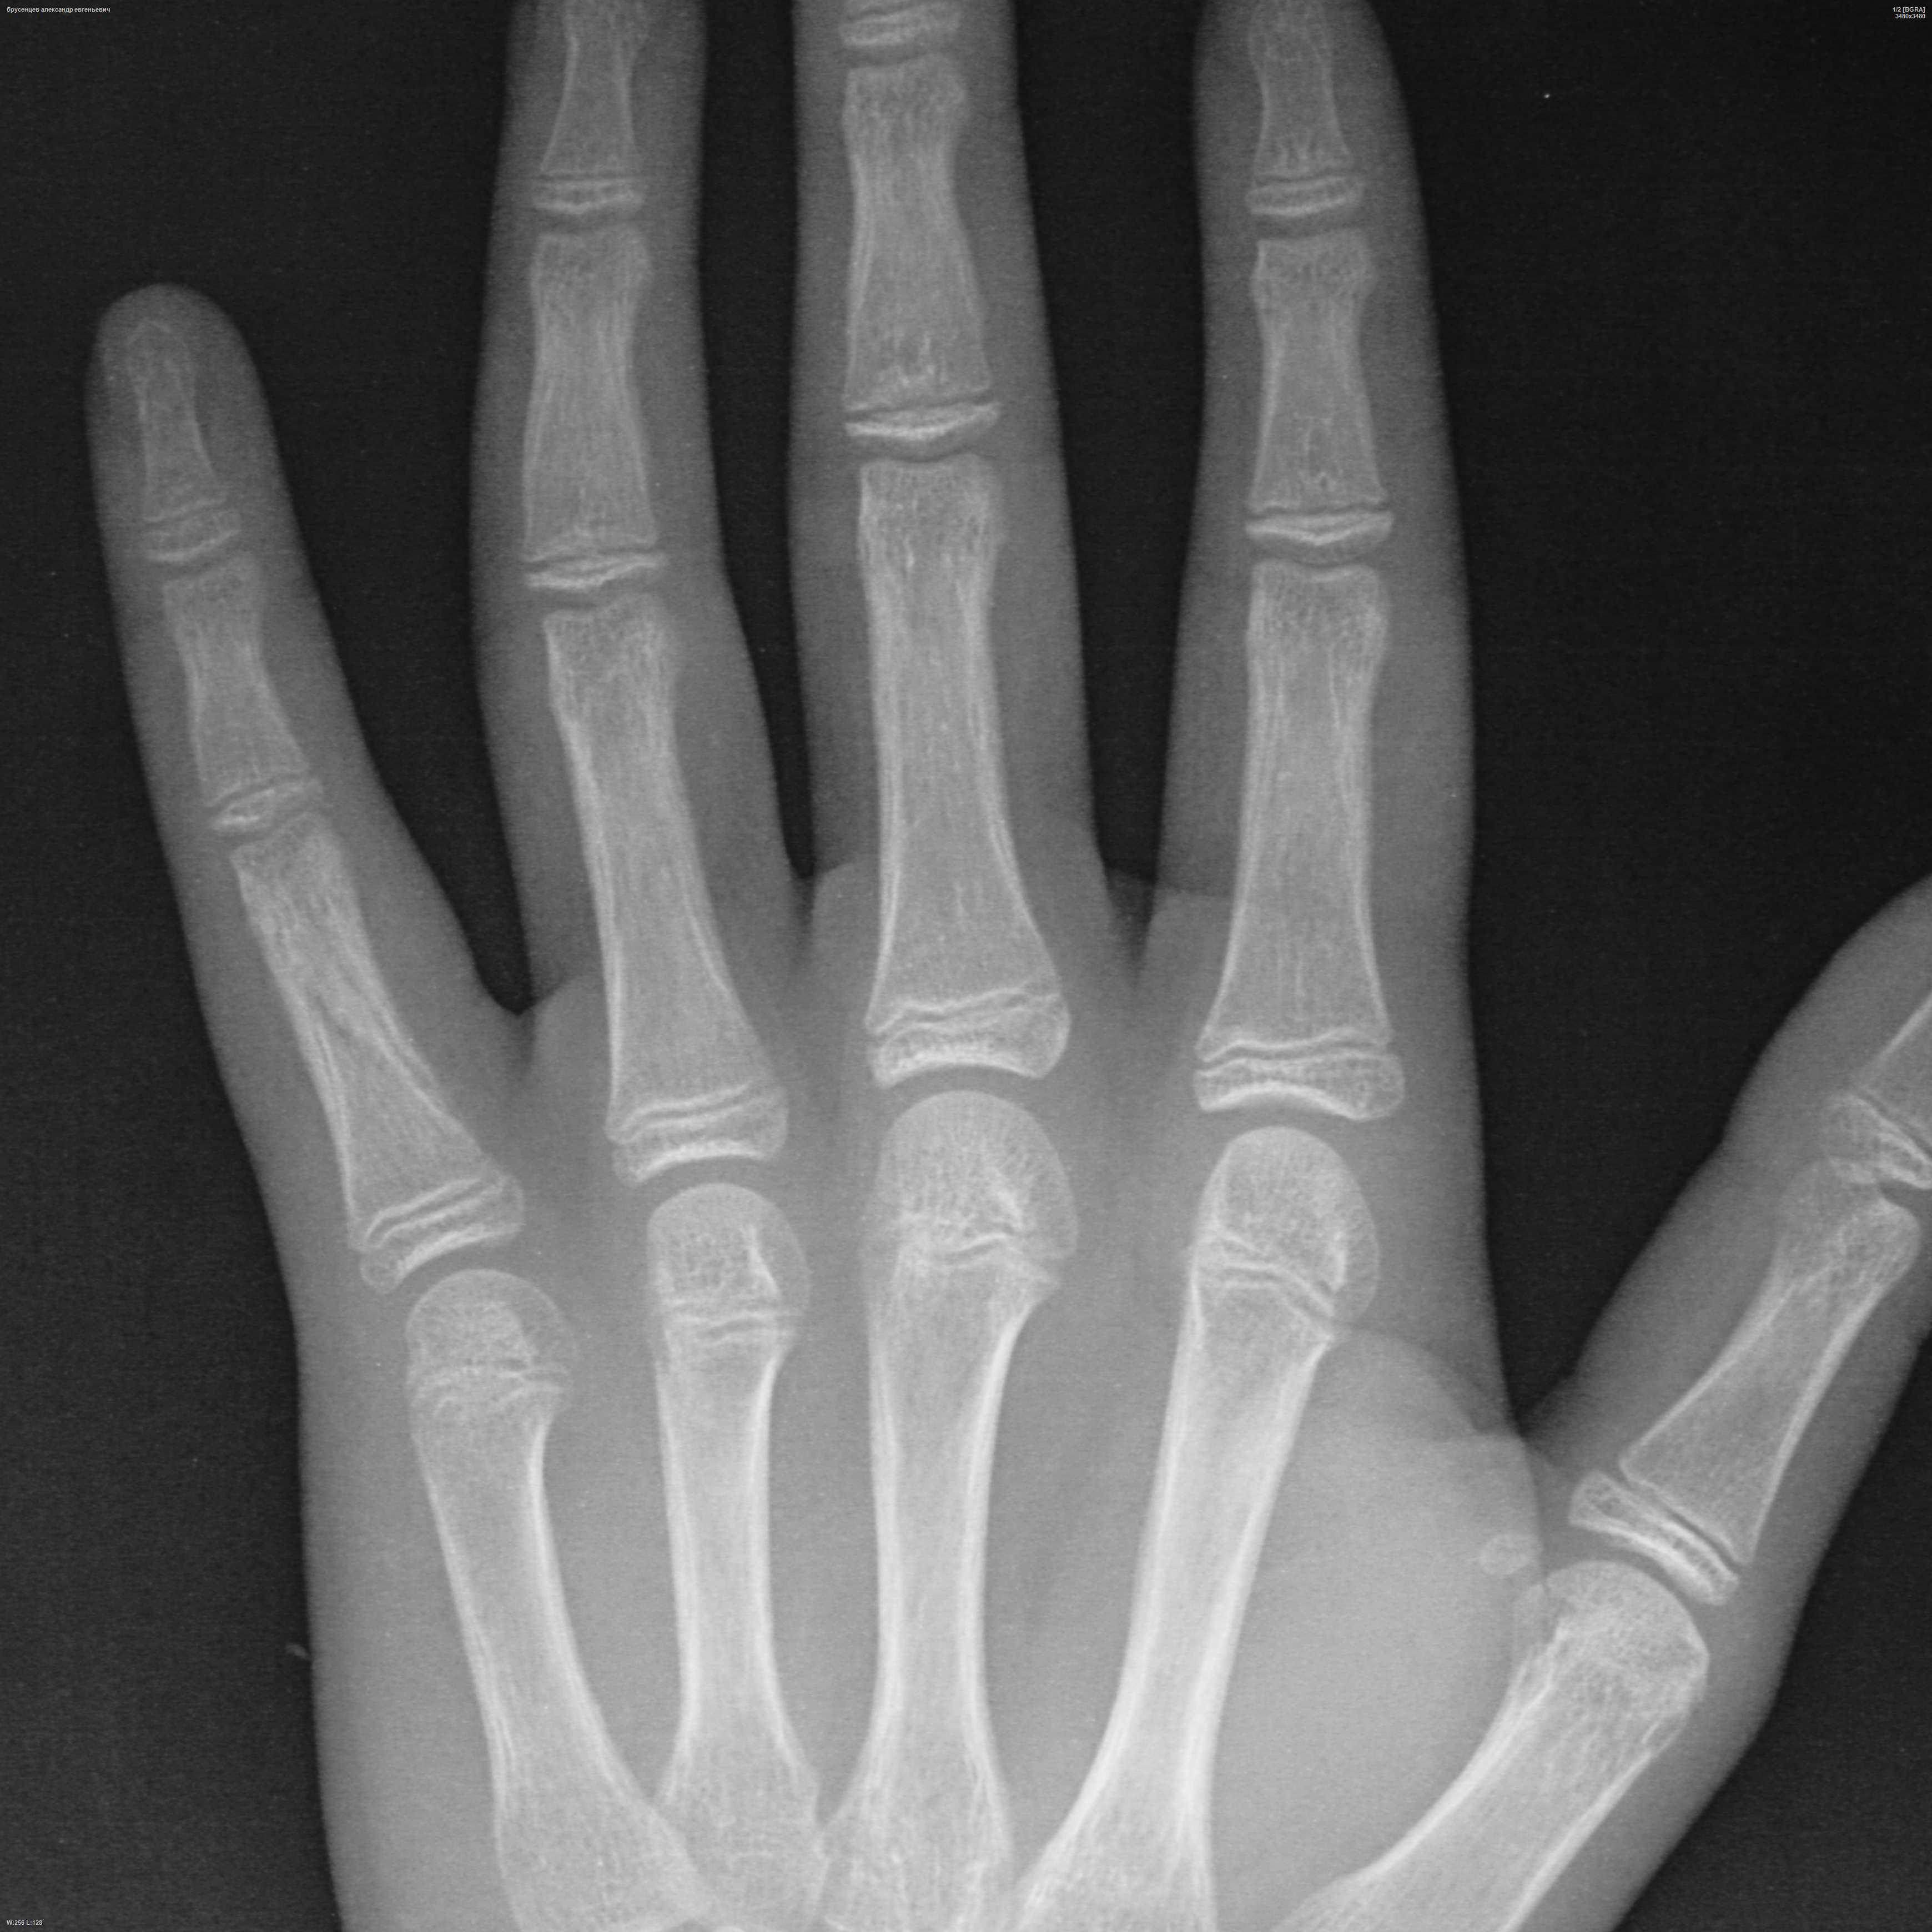 Перелом пястной кости мизинца. Перелом проксимальной фаланги 1 пальца. Перелом проксимальной фаланги 2 пальца. Перелом 1 фаланги мизинца.